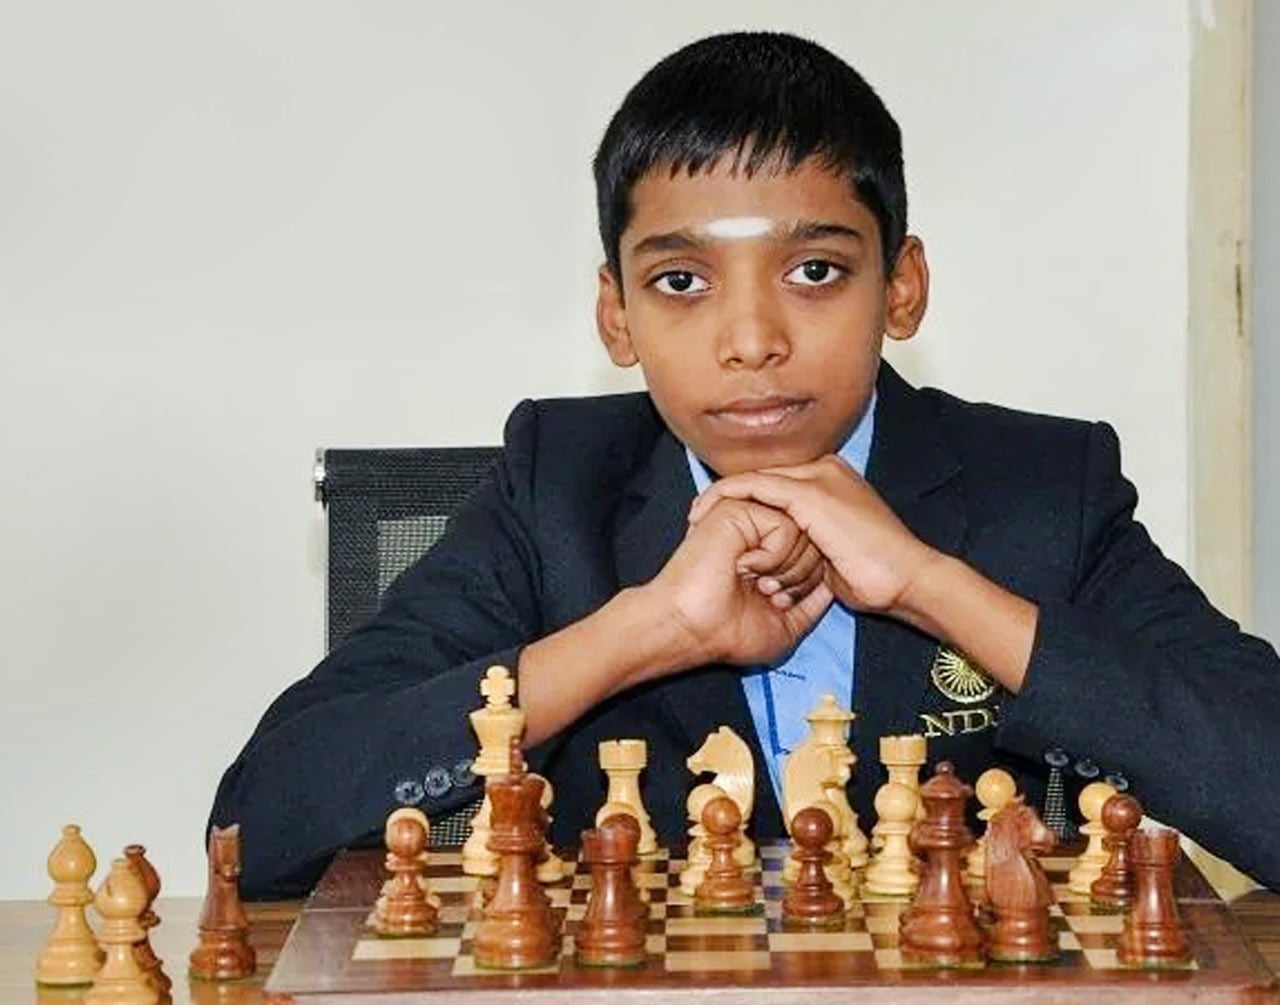 India's Chess Grandmaster Praggnanandhaa beats 5-time World Chess